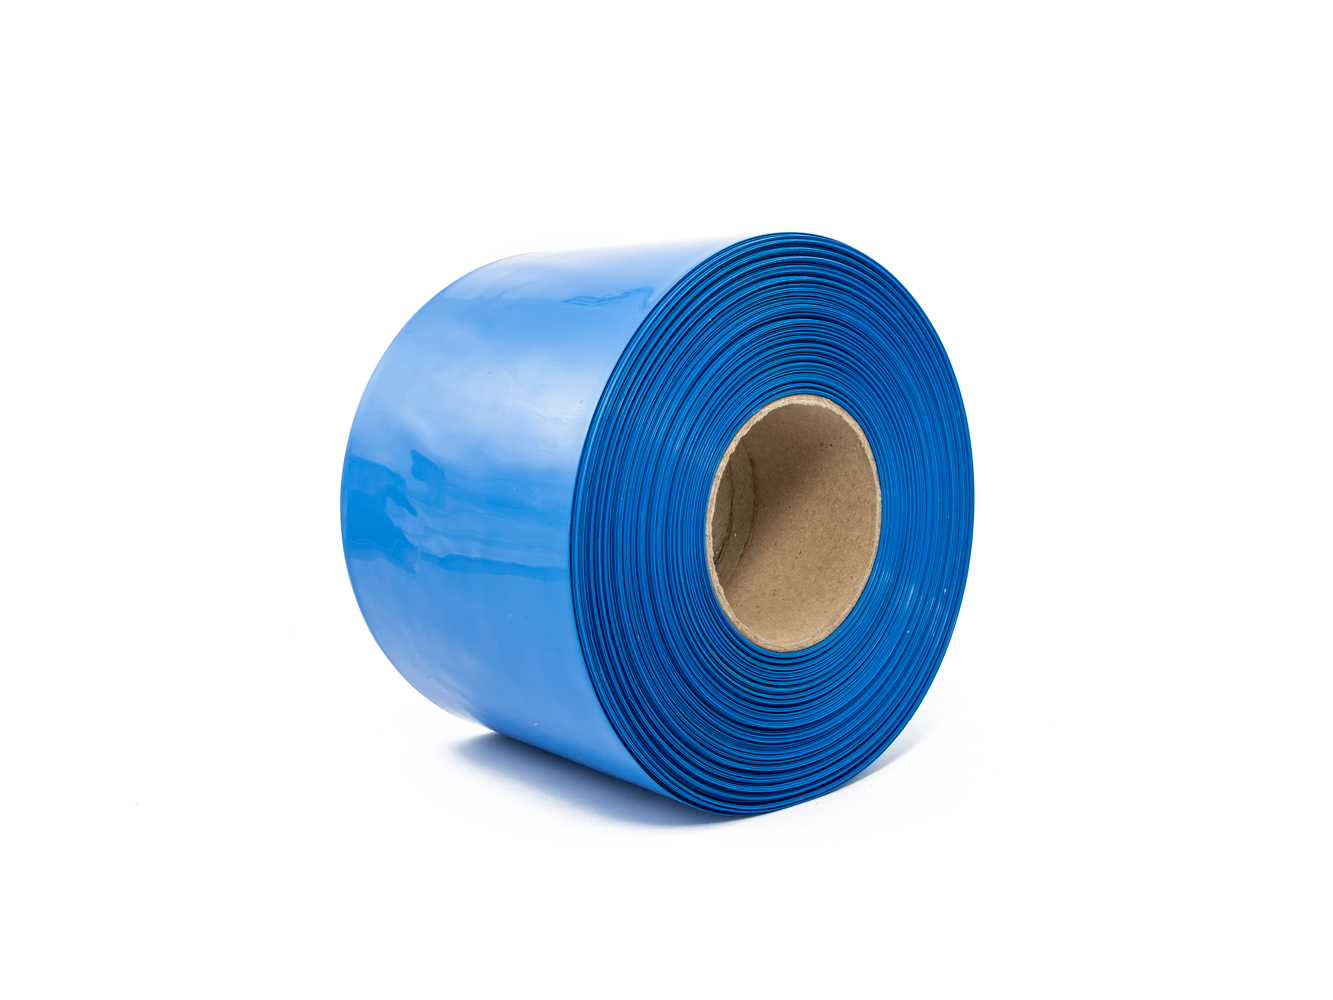 Modrá smrštovací PVC fólie 2:1 šíře 130mm, průměr 80mm